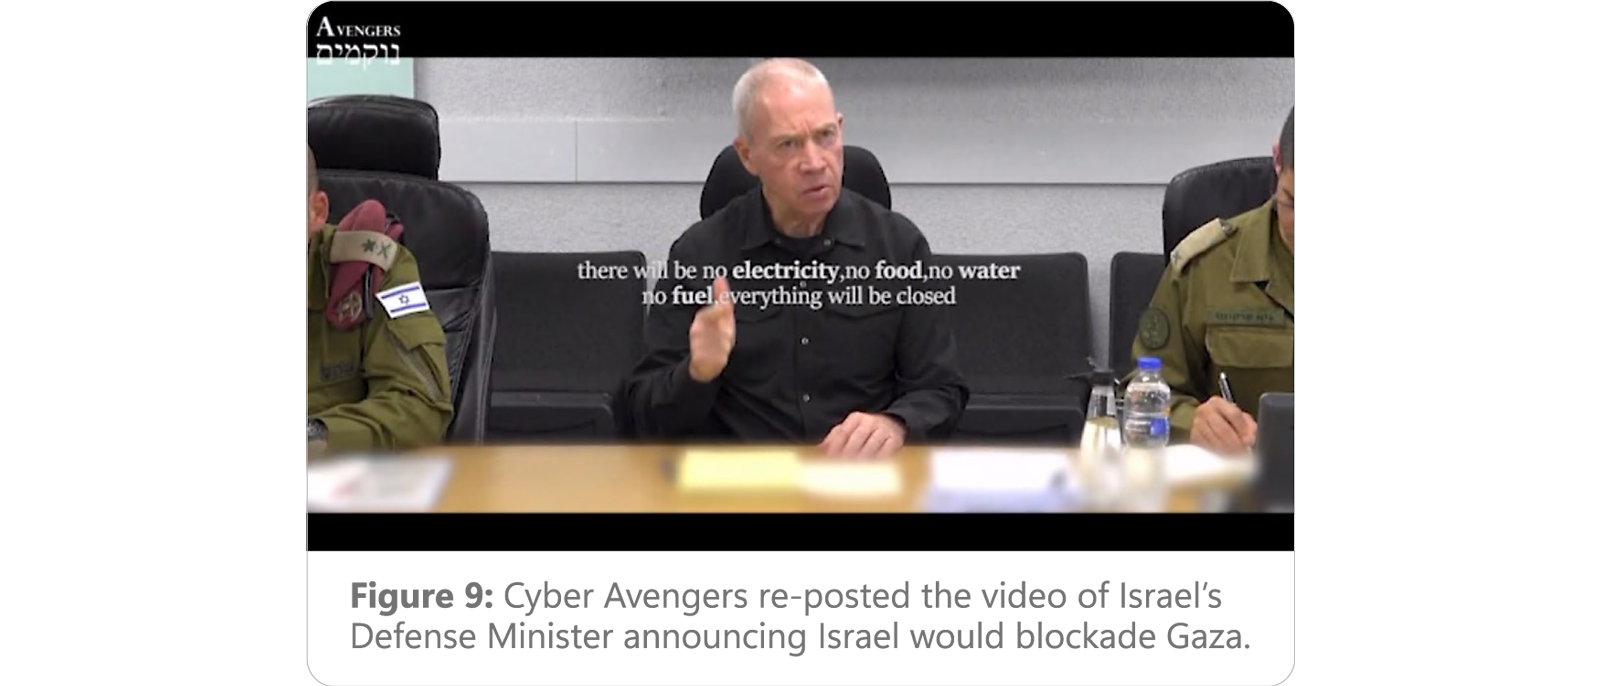 AVENGERS – ohne Elektrizität, Essen, Wasser, Brennstoff. Cyber Avengers veröffentlichen erneut ein Video zu Israels Blockade